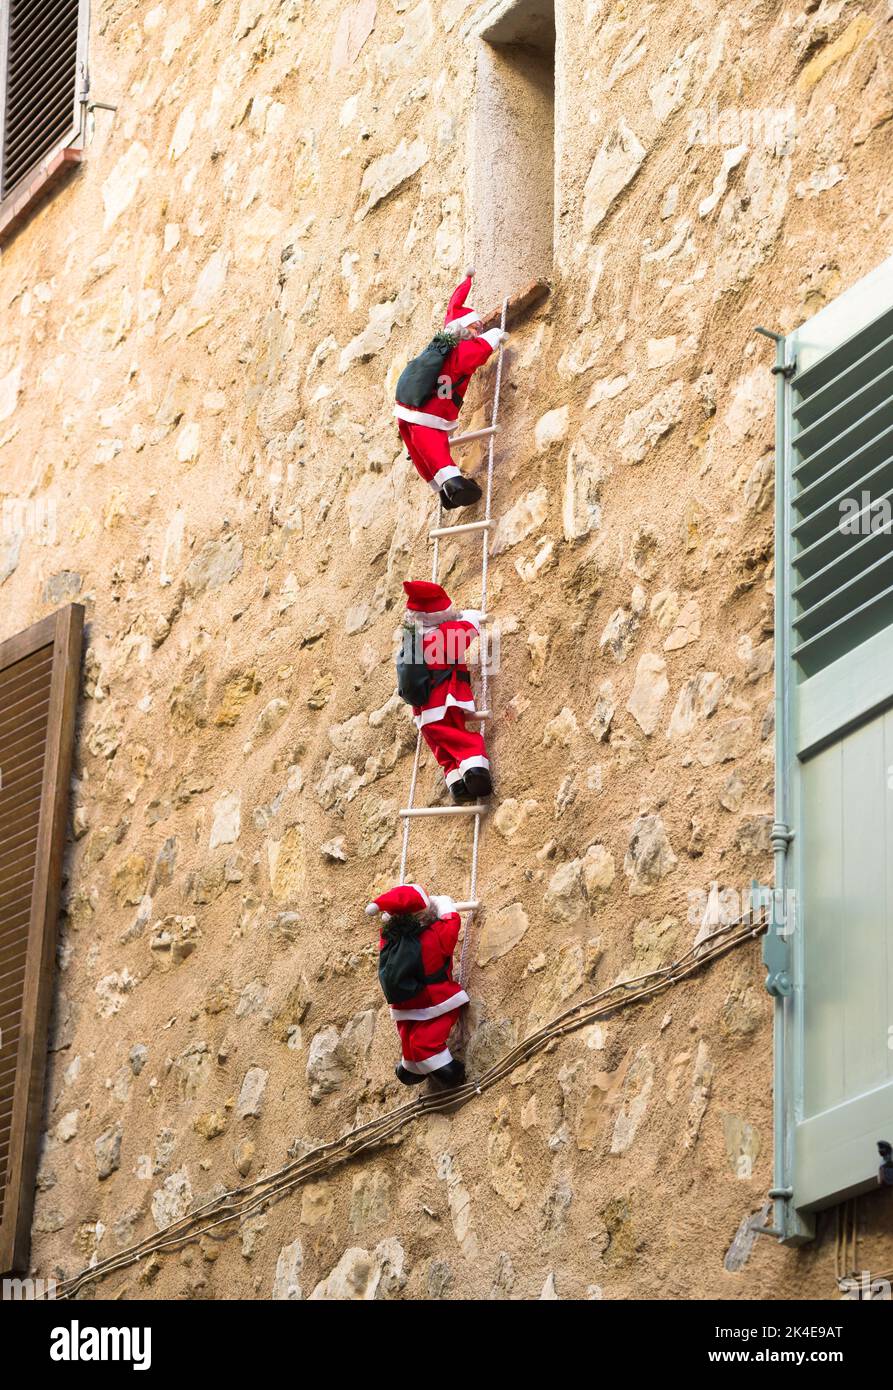 Drei Santa Claus klettern die Seilleiter an einer Fassade Stockfoto